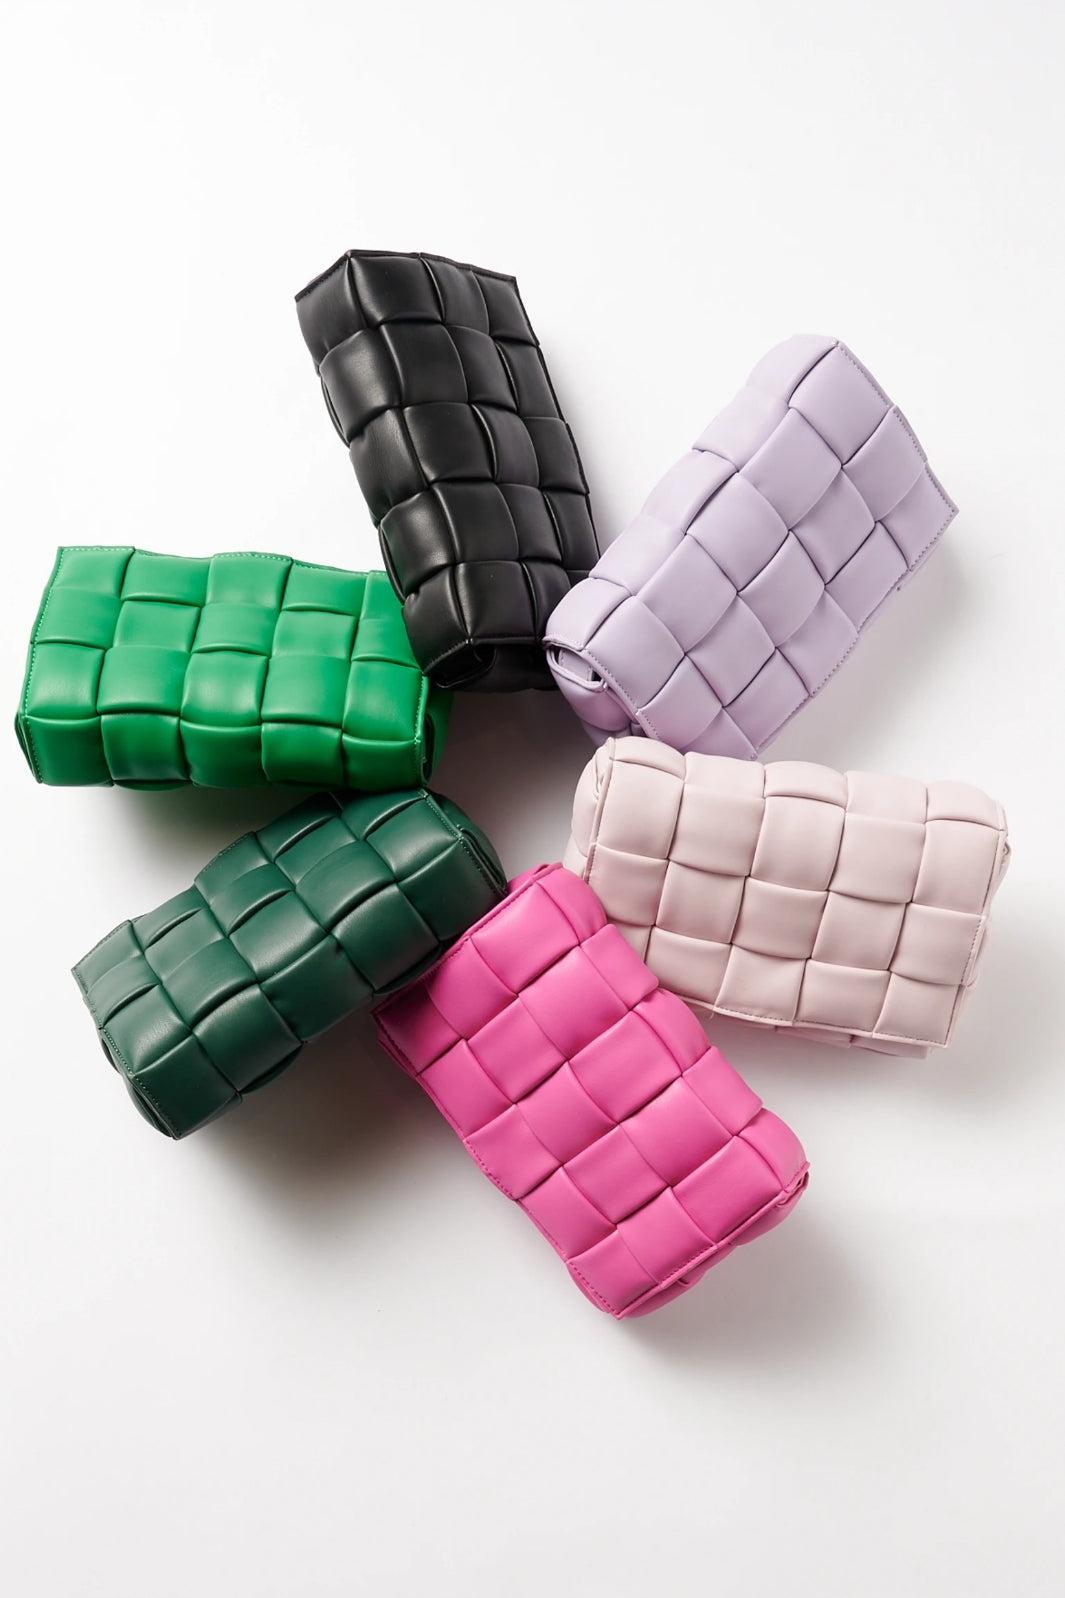 Noella - Brick Bag - Lavender Tasker 